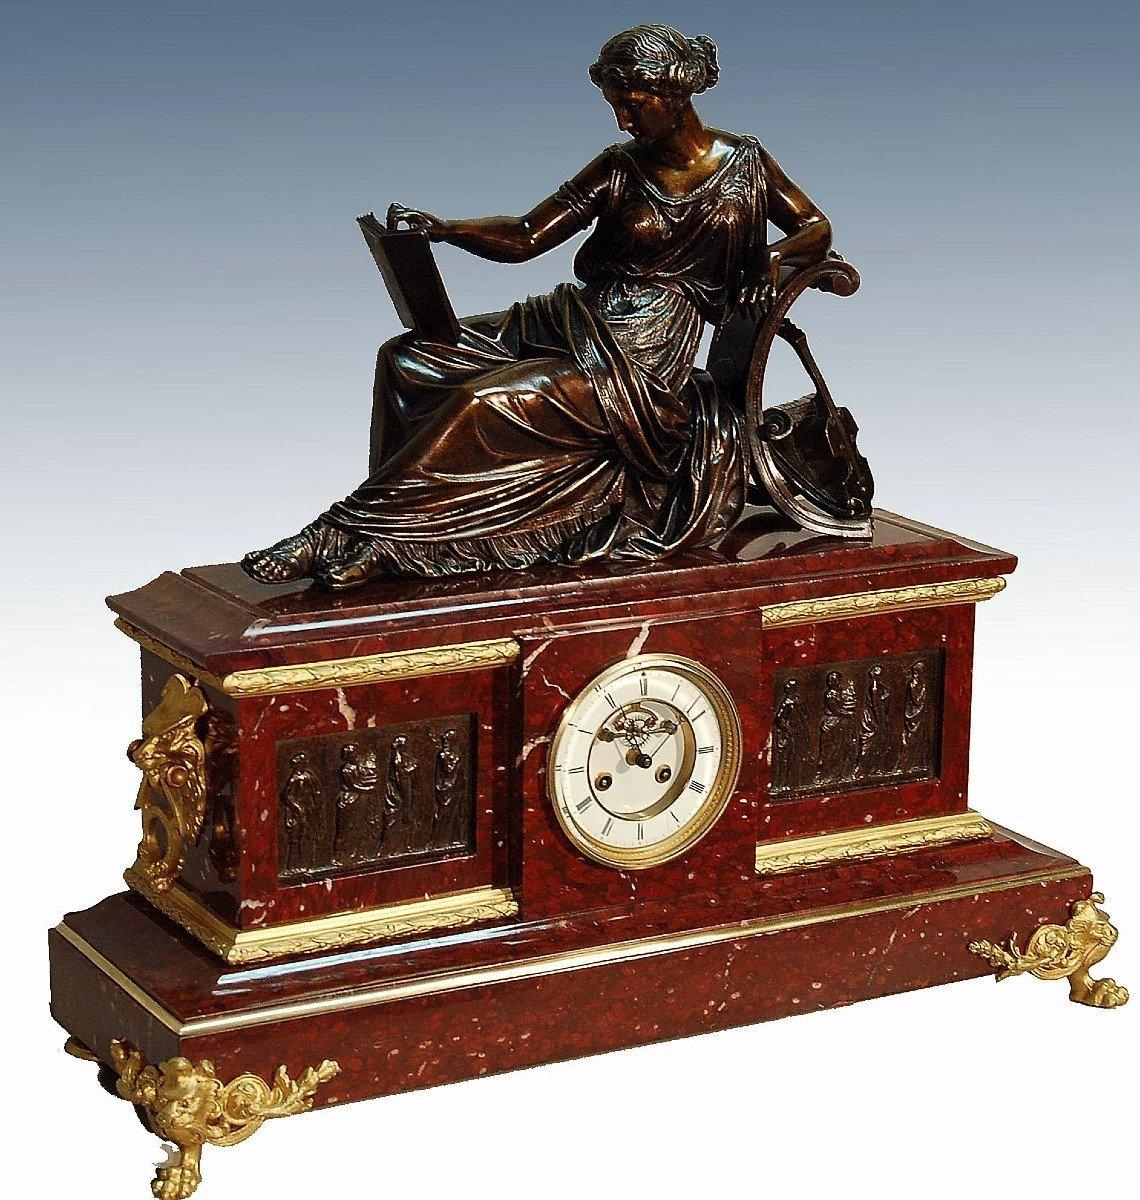 Importante horloge en marbre rouge royal, surmontée d'une sculpture en bronze patiné, une femme allongée sur un canapé, elle est habillée à l'antique, elle tient une partition de musique à la main. Le thème de cette sculpture est la musique. Le